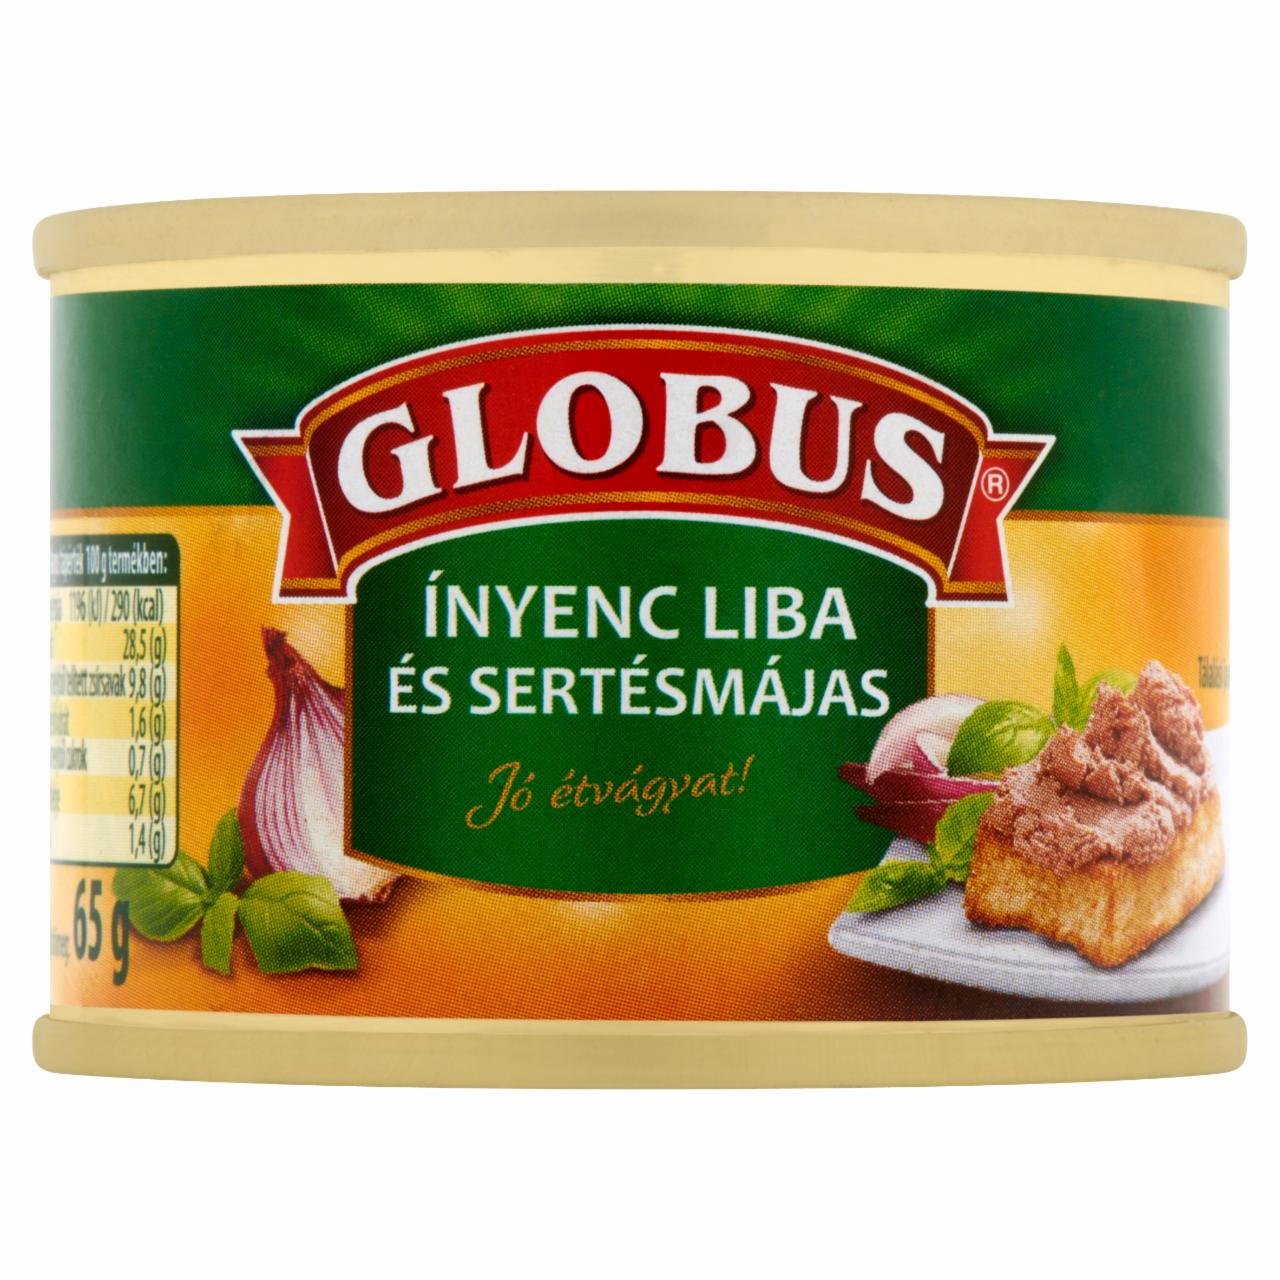 Képek - Globus ínyenc liba és sertésmájas 65 g